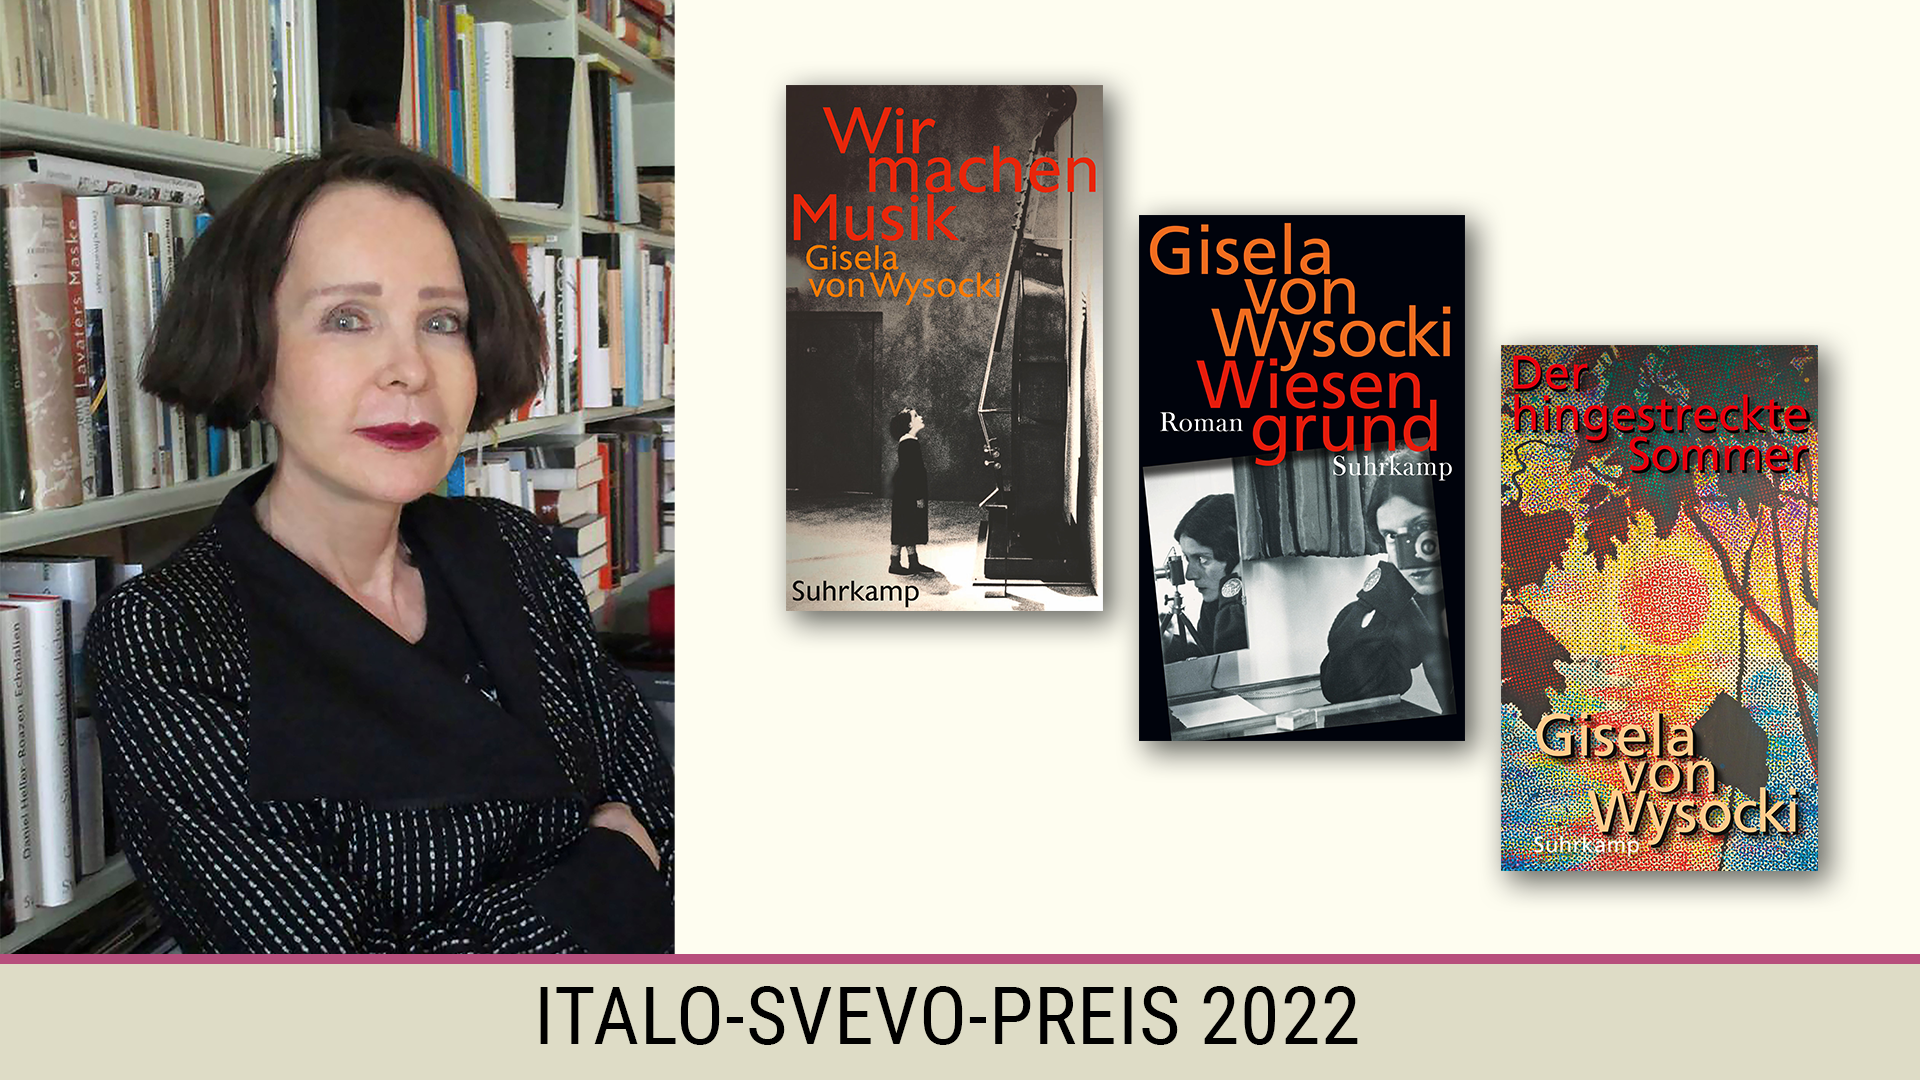 Beitrag zu Gisela von Wysocki erhält den Italo-Svevo-Preis 2022 